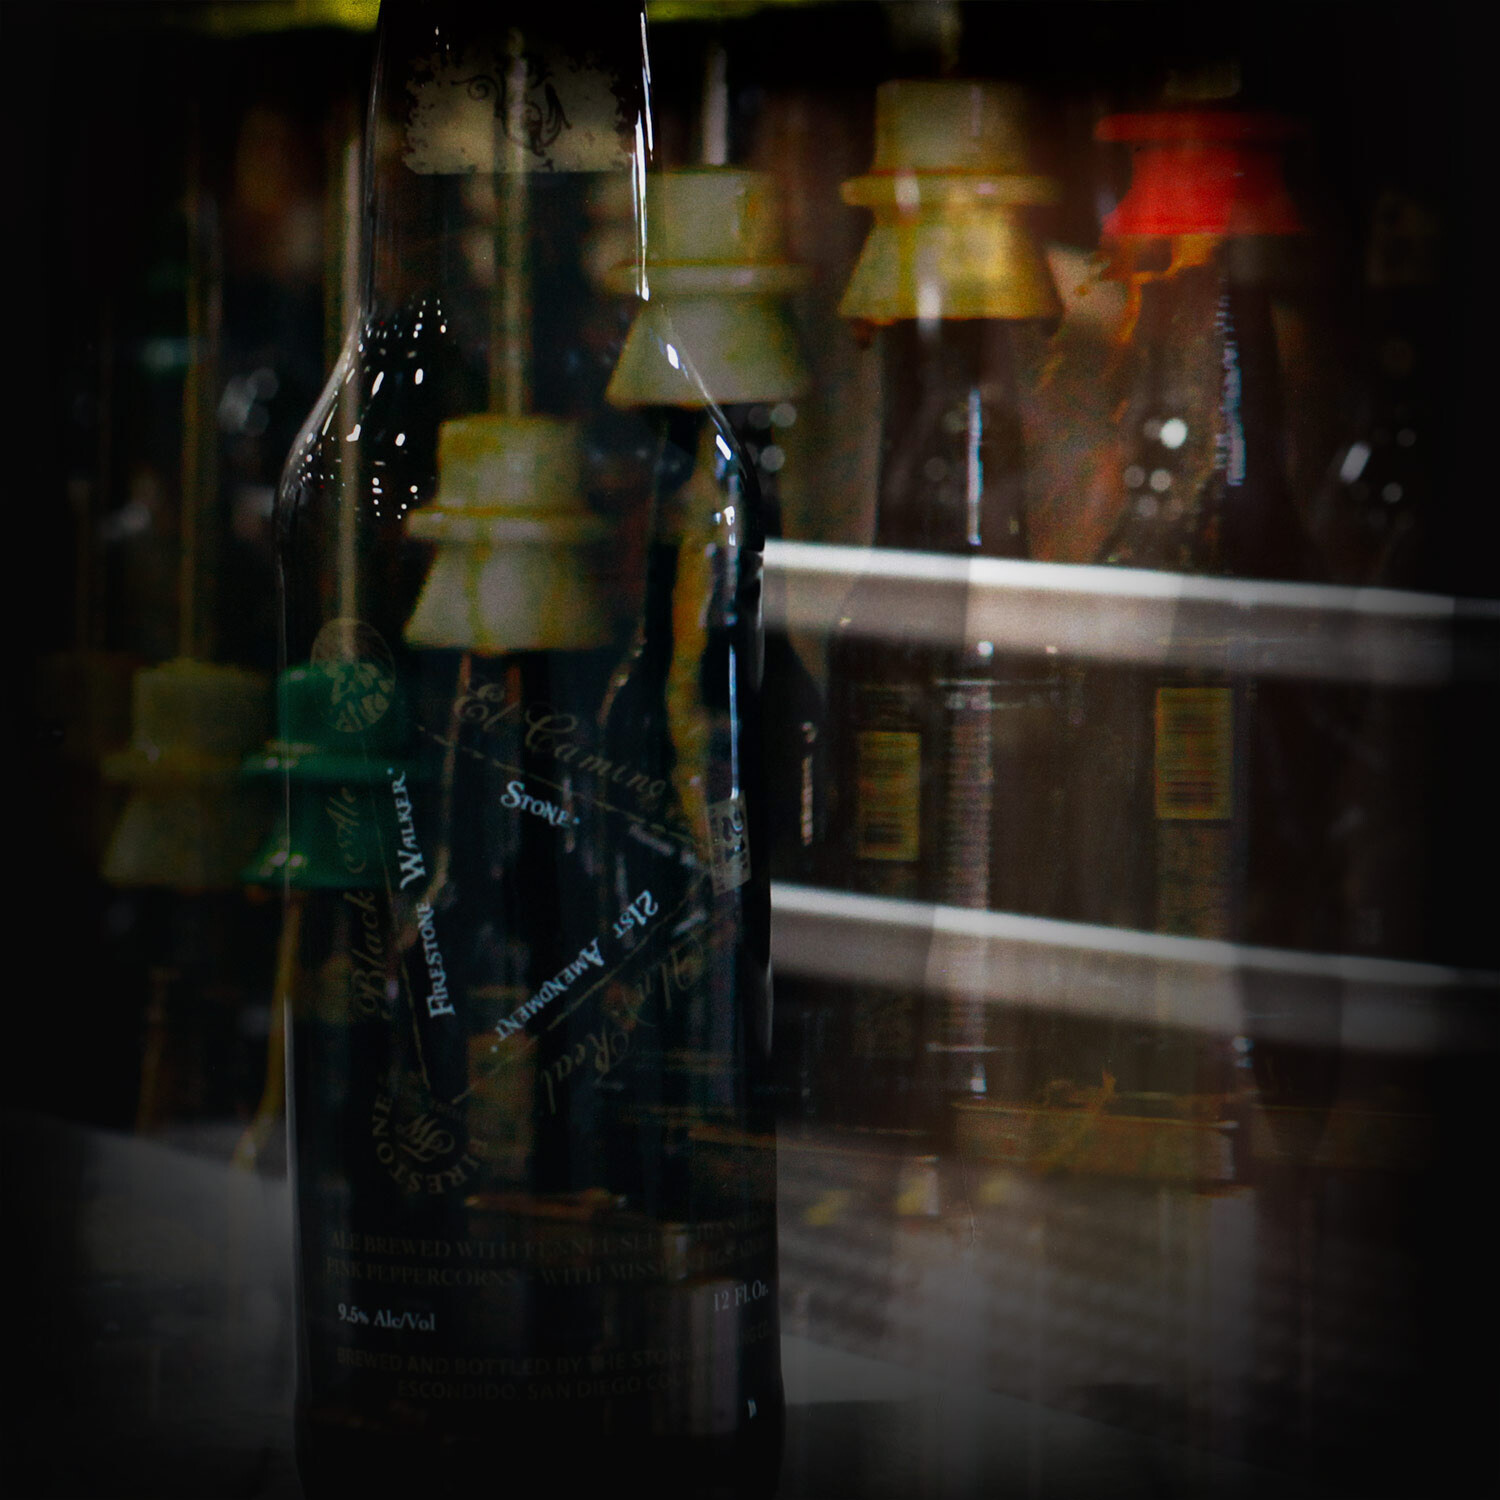 bottles of 21st Amendment / Firestone Walker / Stone El Camino (UN)REAL Black Ale